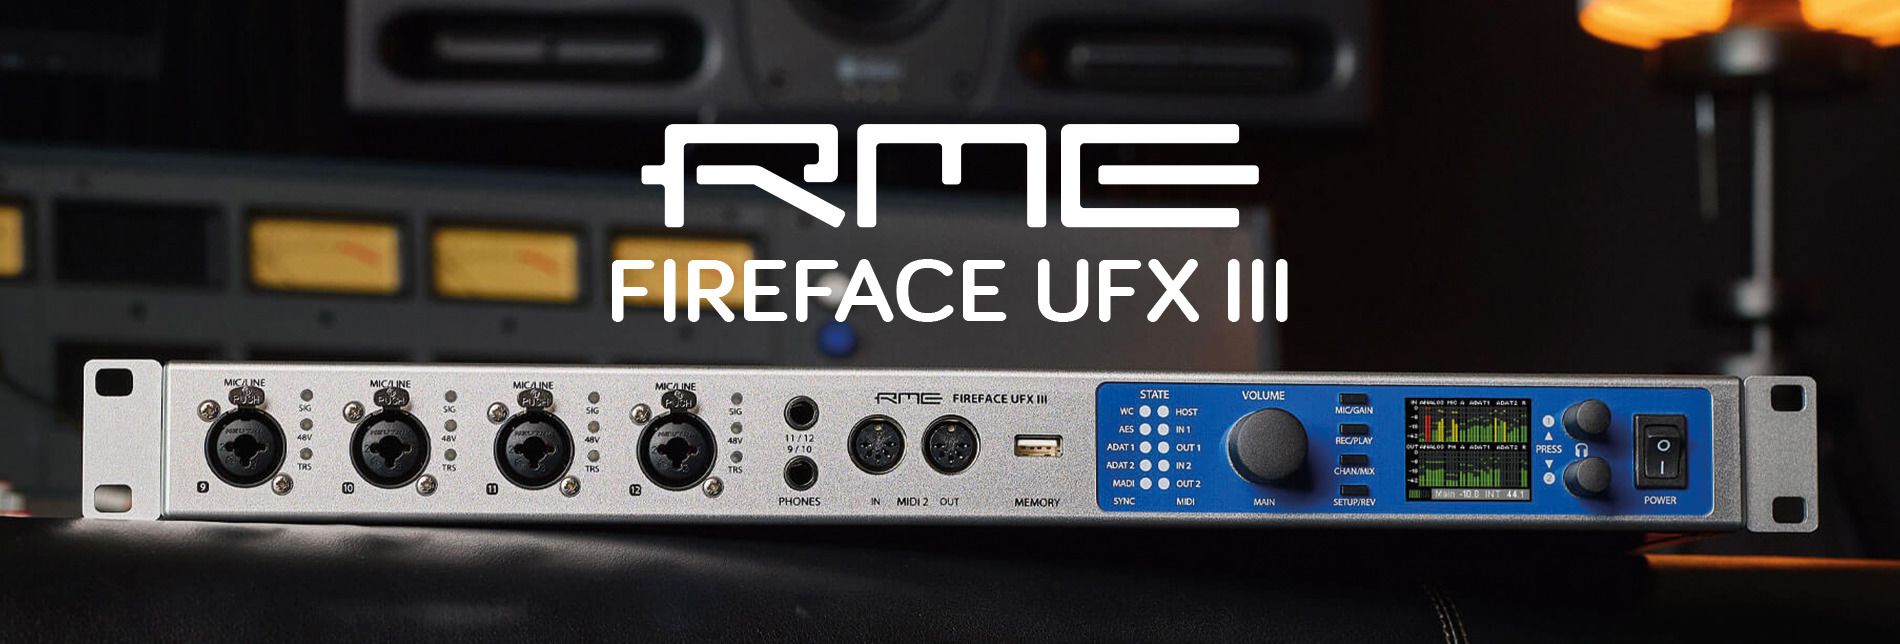 RME FIREFACE UFX III - ARBITER